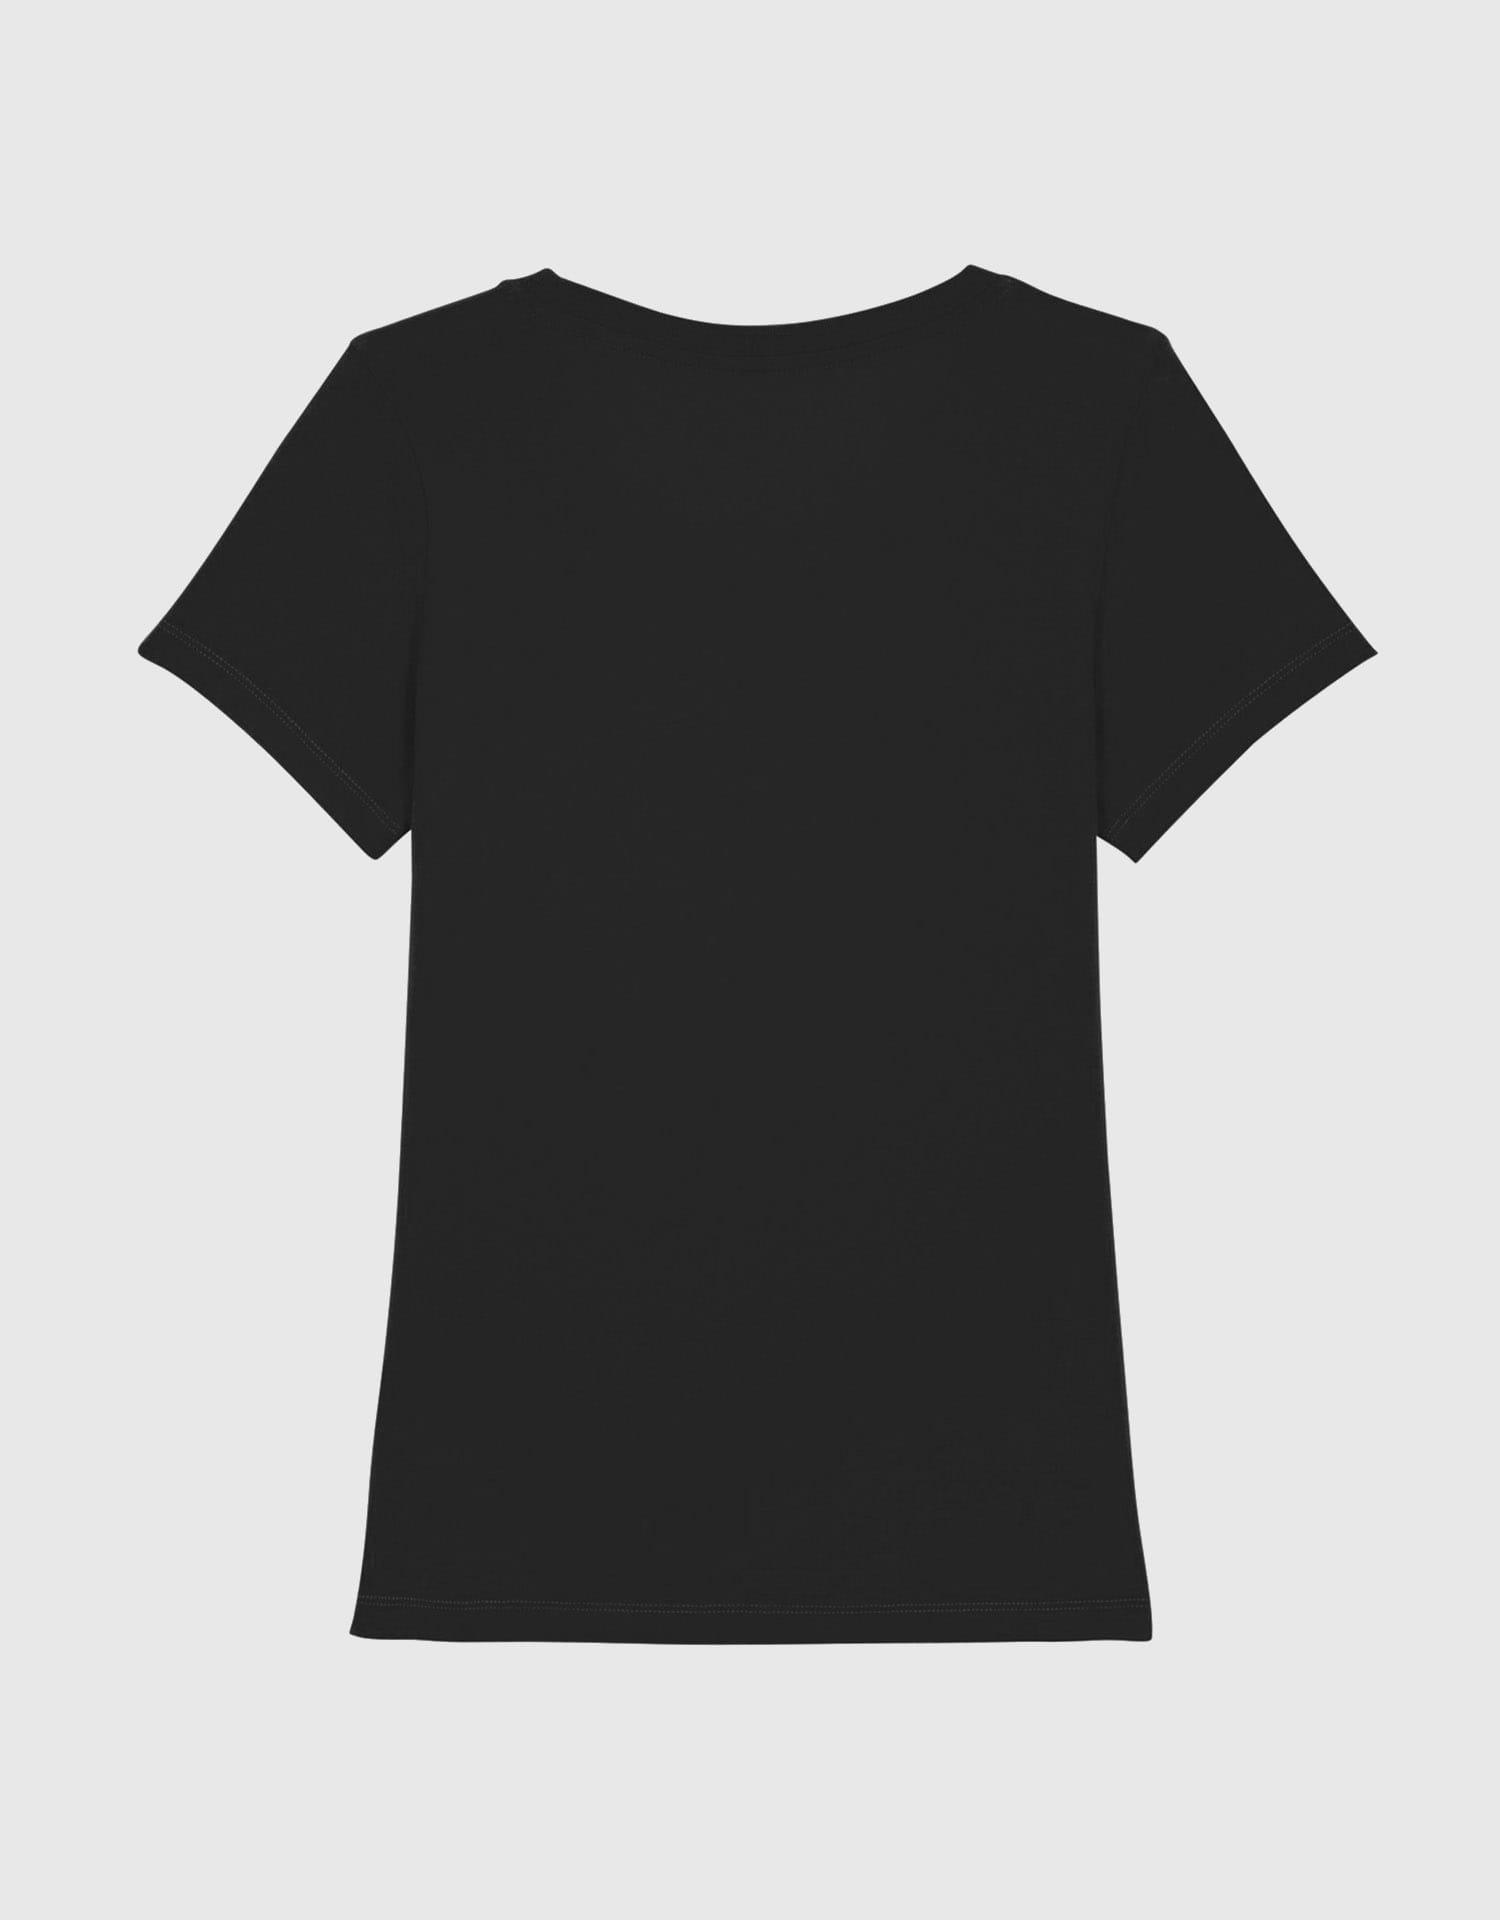 ninesquared-tshirt-black-bk-W